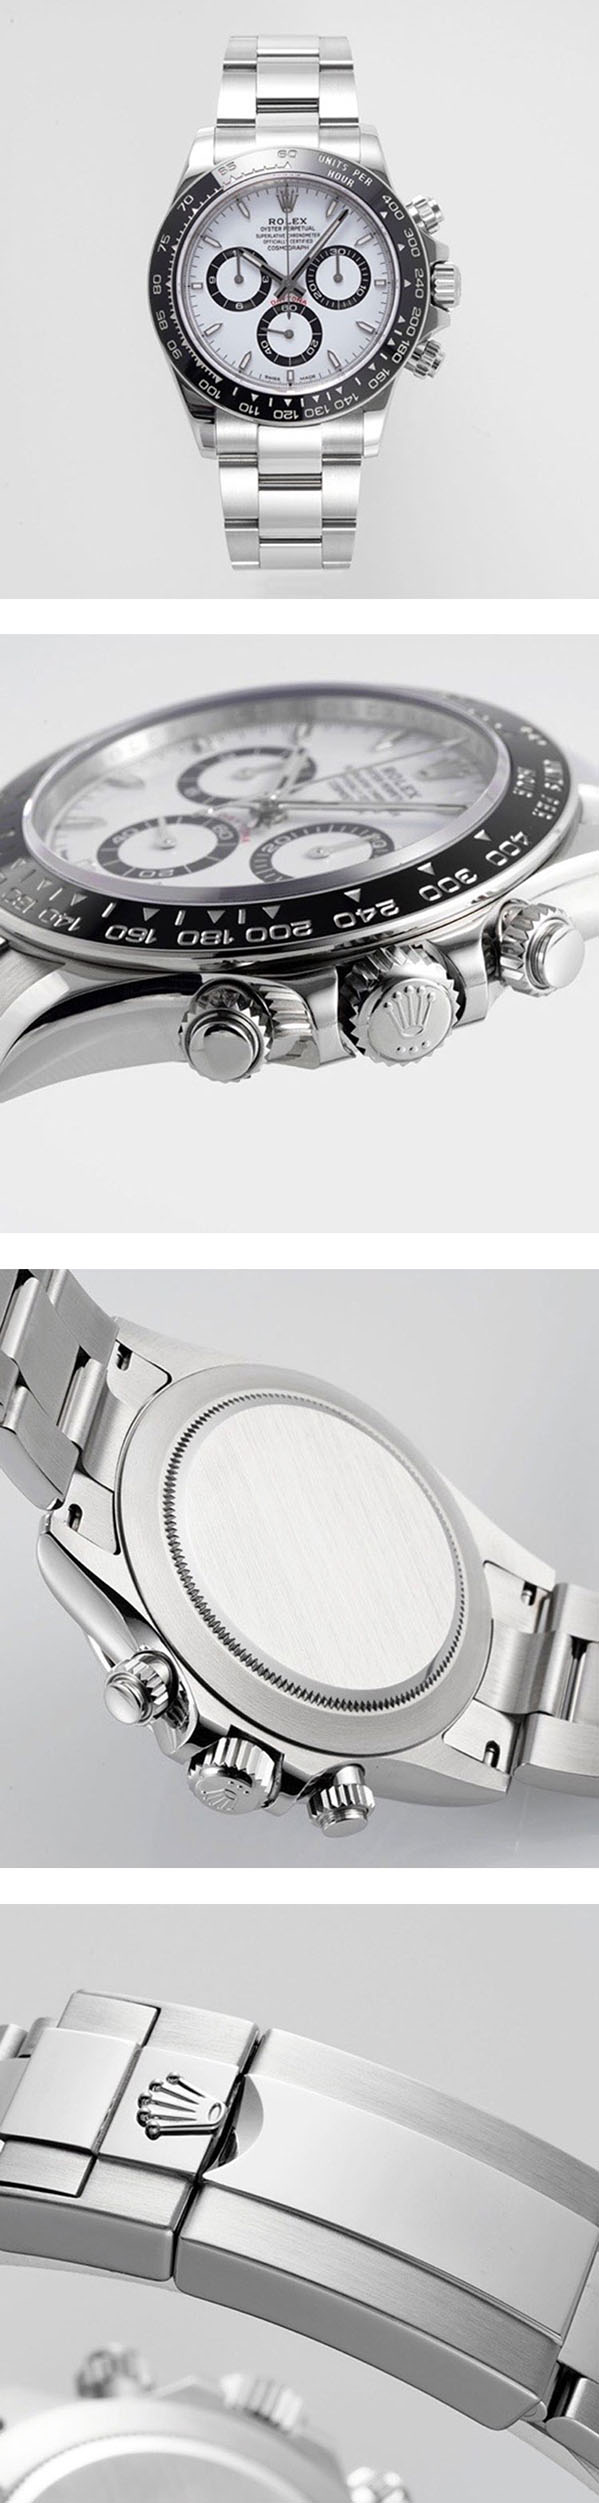 高精度のデイトナ コピー時計 M126500LN-0001、絶大なる人気を誇る